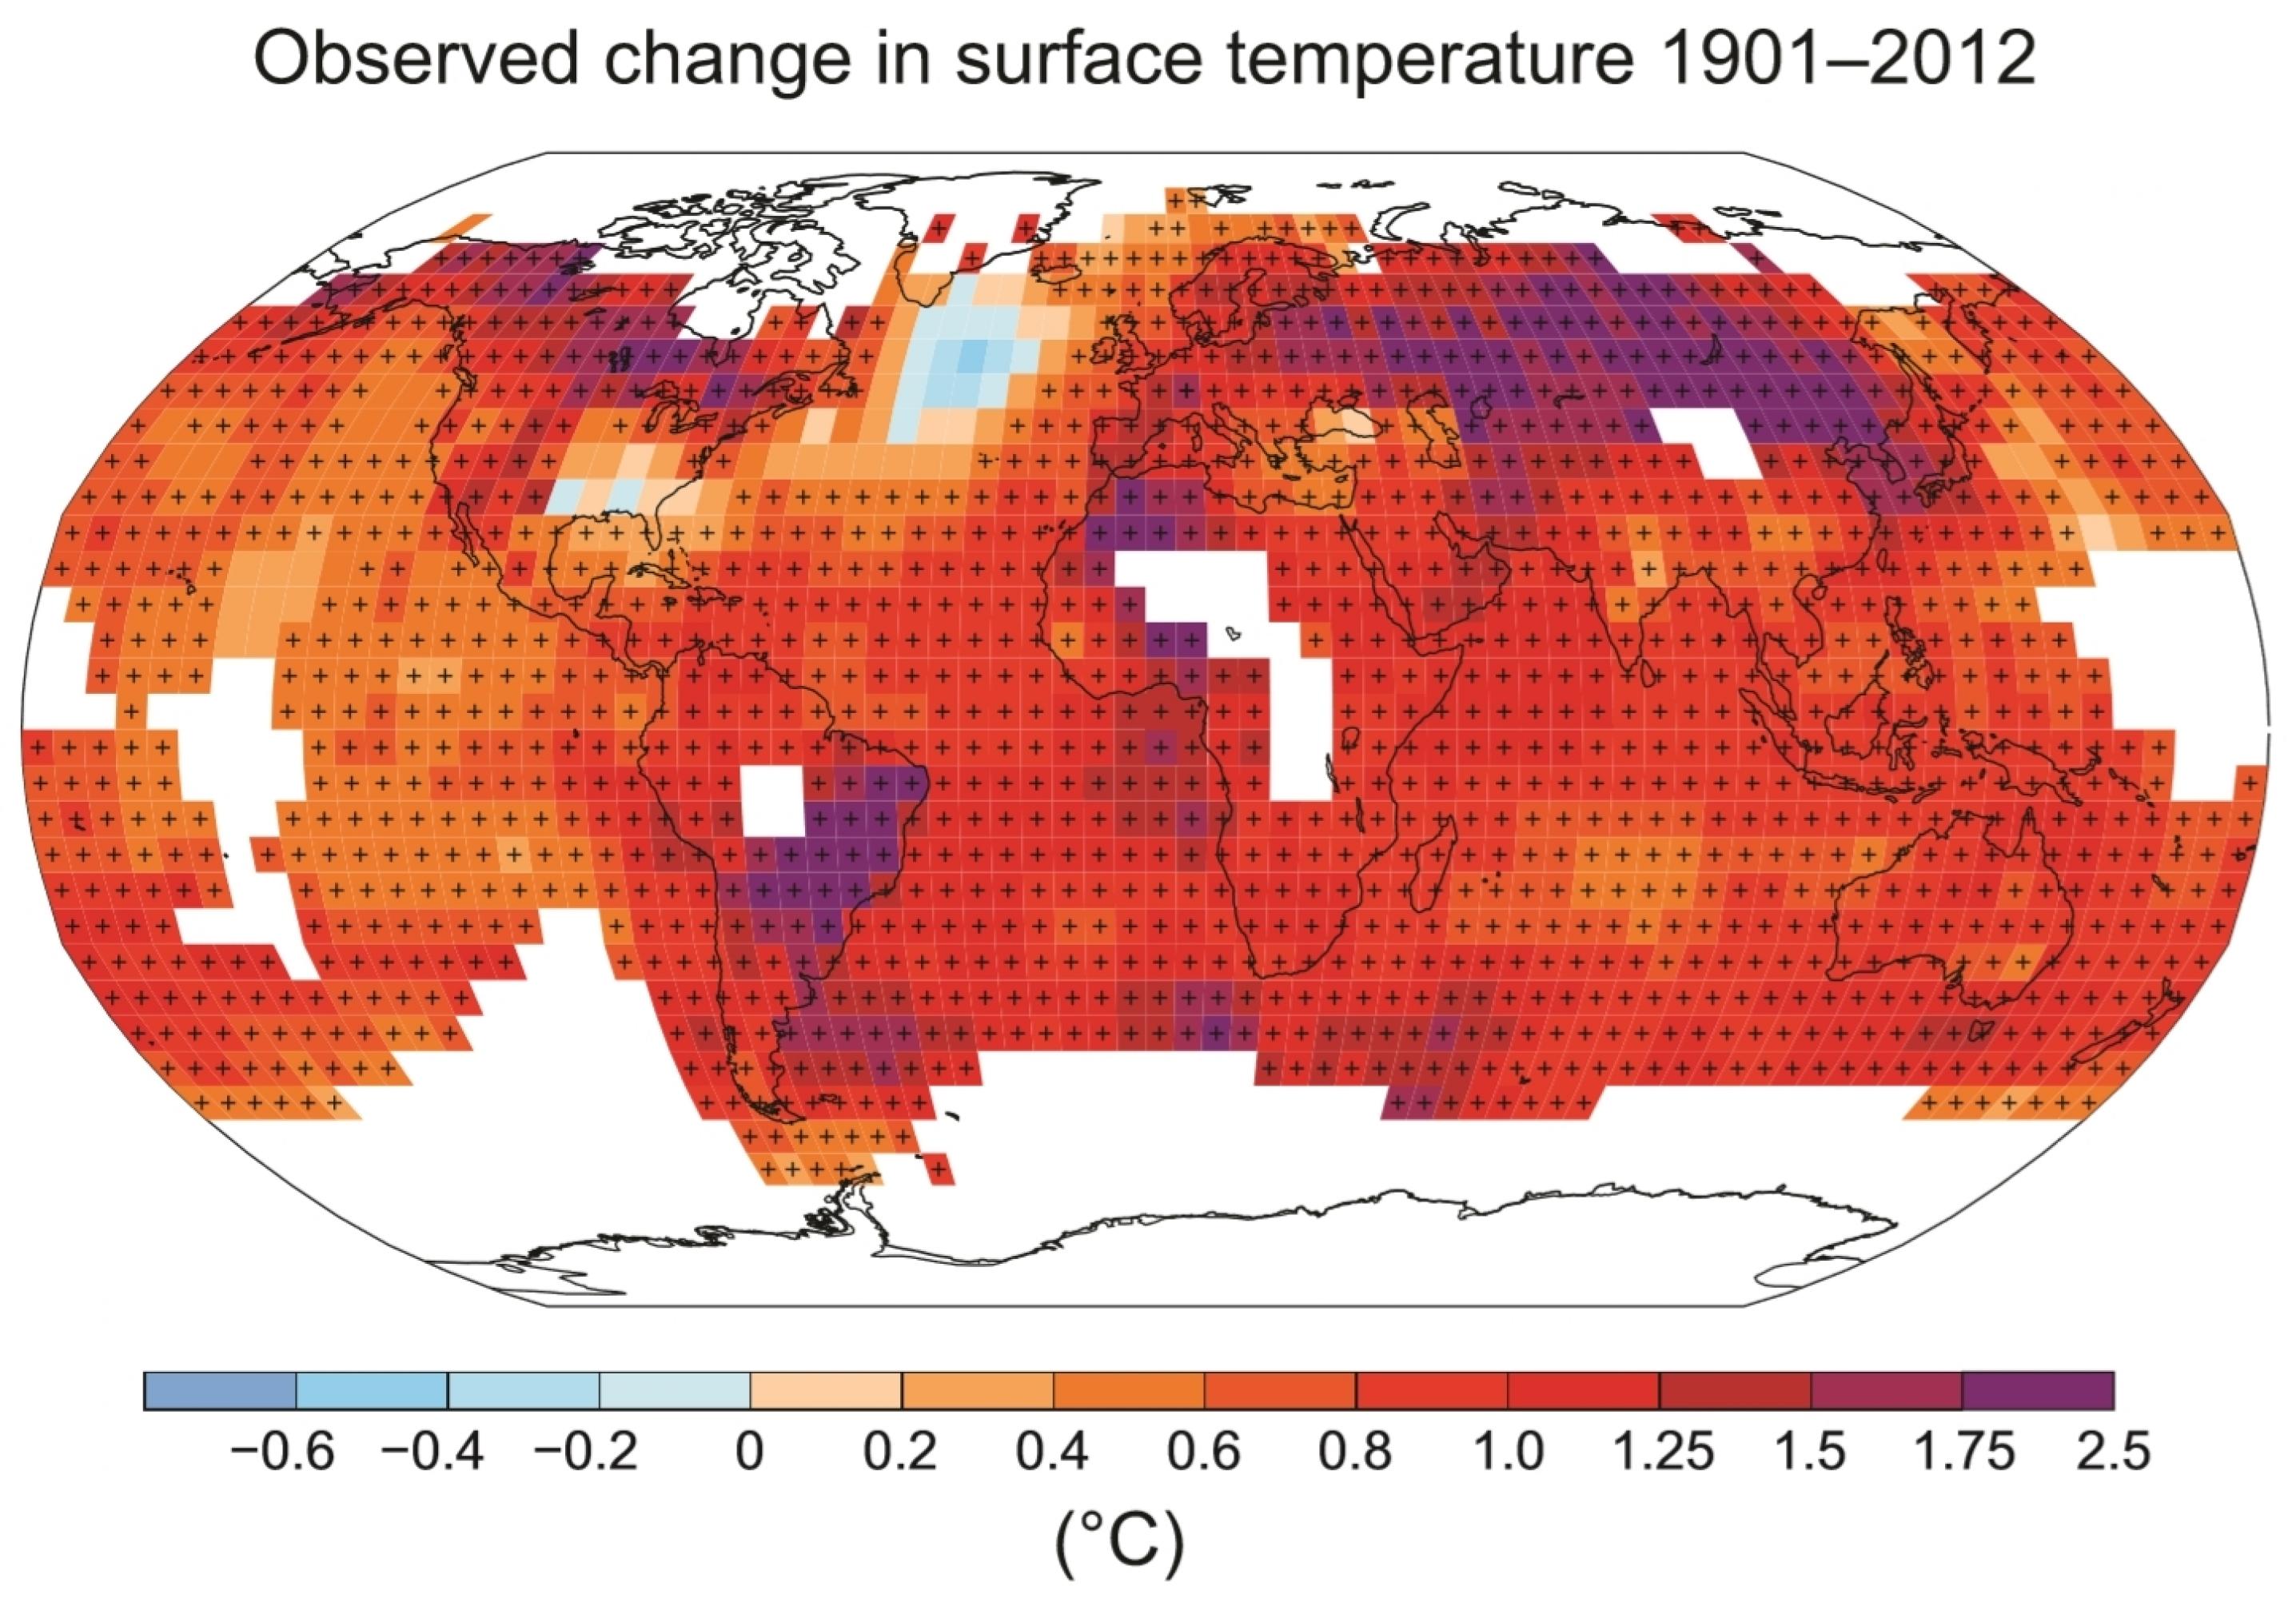 Die Karte aus dem jüngsten Bericht des Weltklimarats IPCC zeigt, wie sich die Temperaturen im 20. Jahrhundert verändert haben. Die Pluszeichen zeigen an, dass der Trend des jeweiligen Felds statistisch signifikant ist. Regionen, in denen nicht genügend Messdaten vorliegen, bleiben weiß.